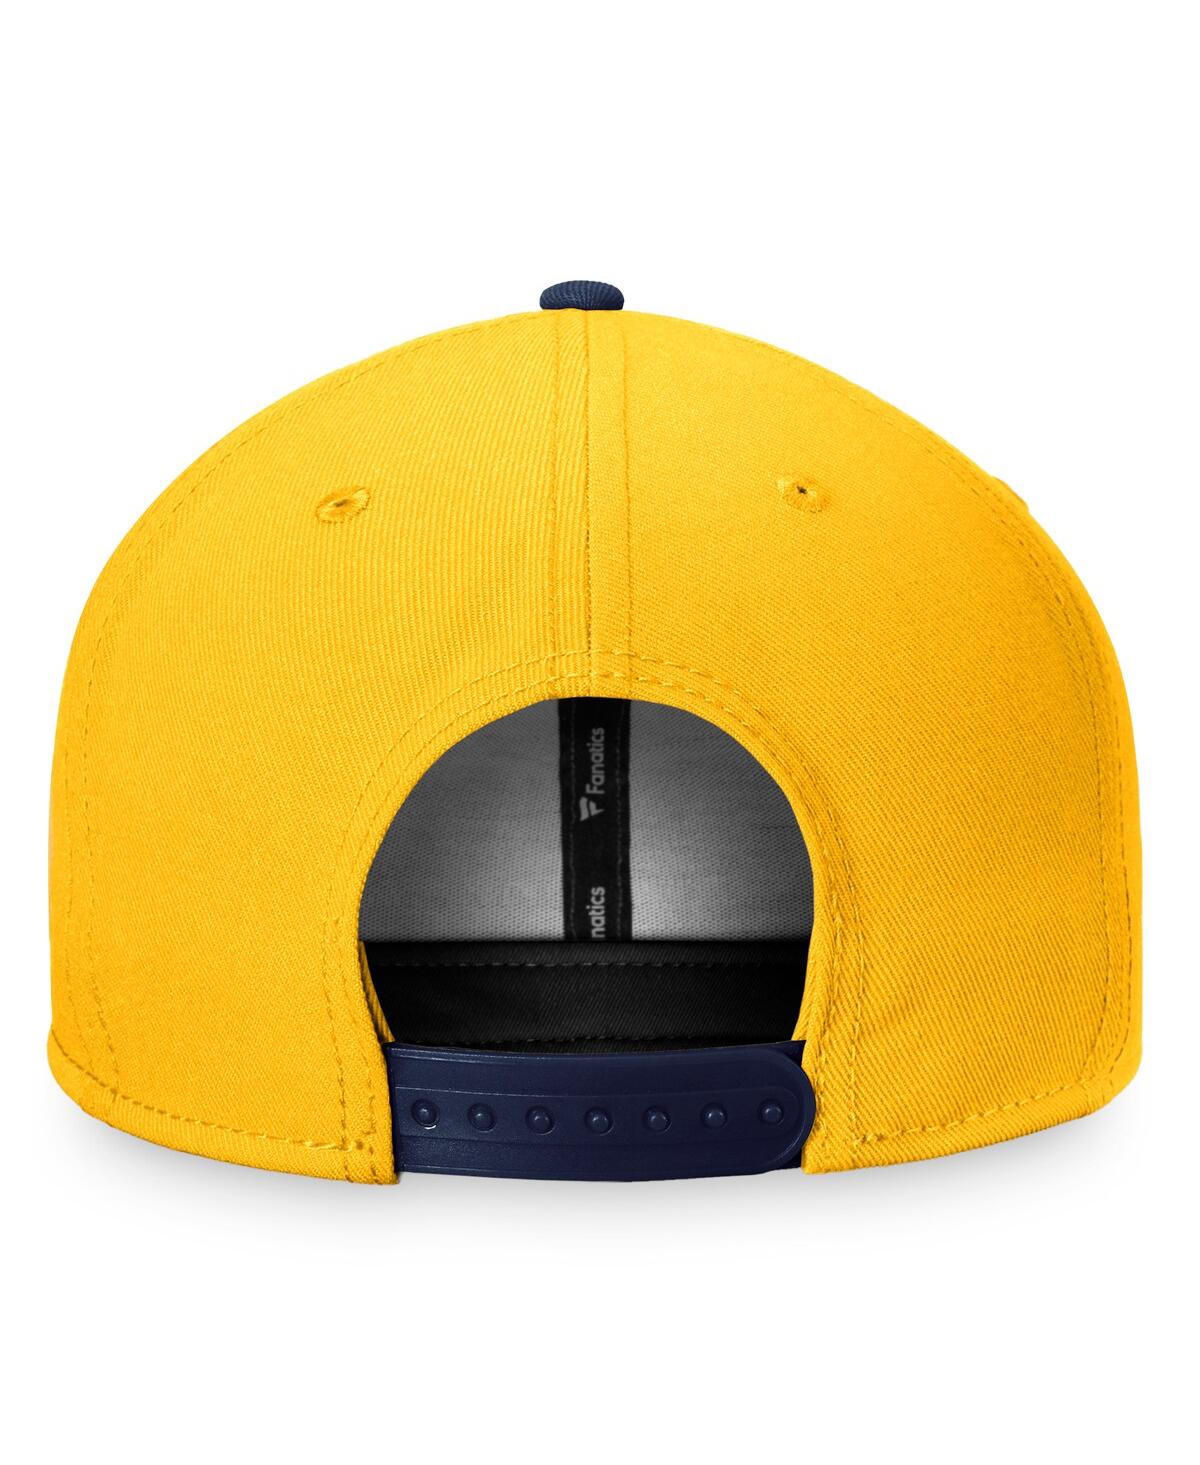 Shop Fanatics Men's  Gold, Navy Nashville Predators Fundamental Colorblocked Snapback Hat In Gold,navy